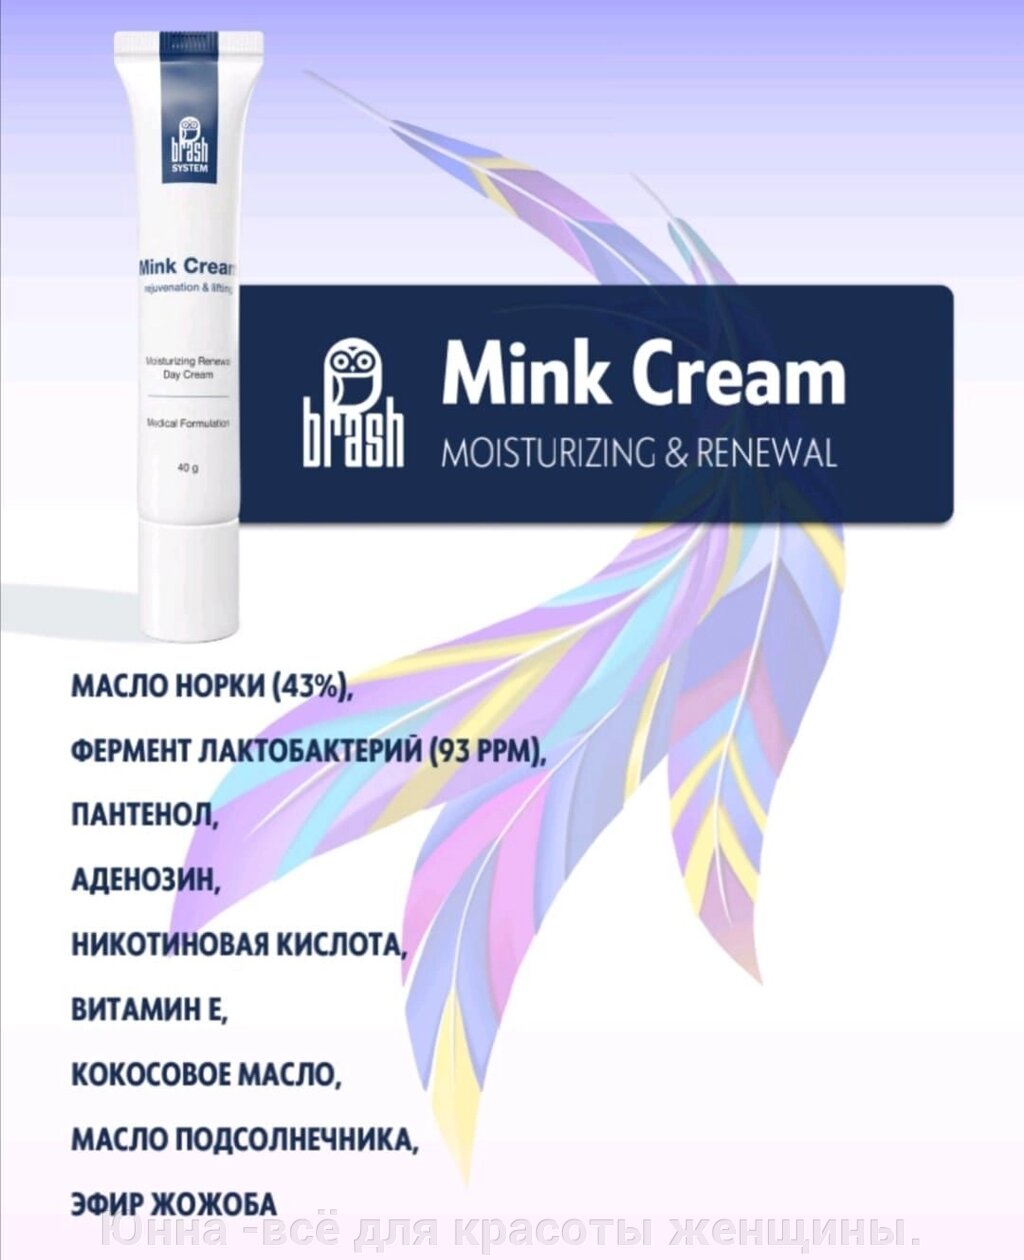 Mink cream — Крем с маслом норки, Brash company 40гр от компании Юнна -всё для красоты женщины. - фото 1